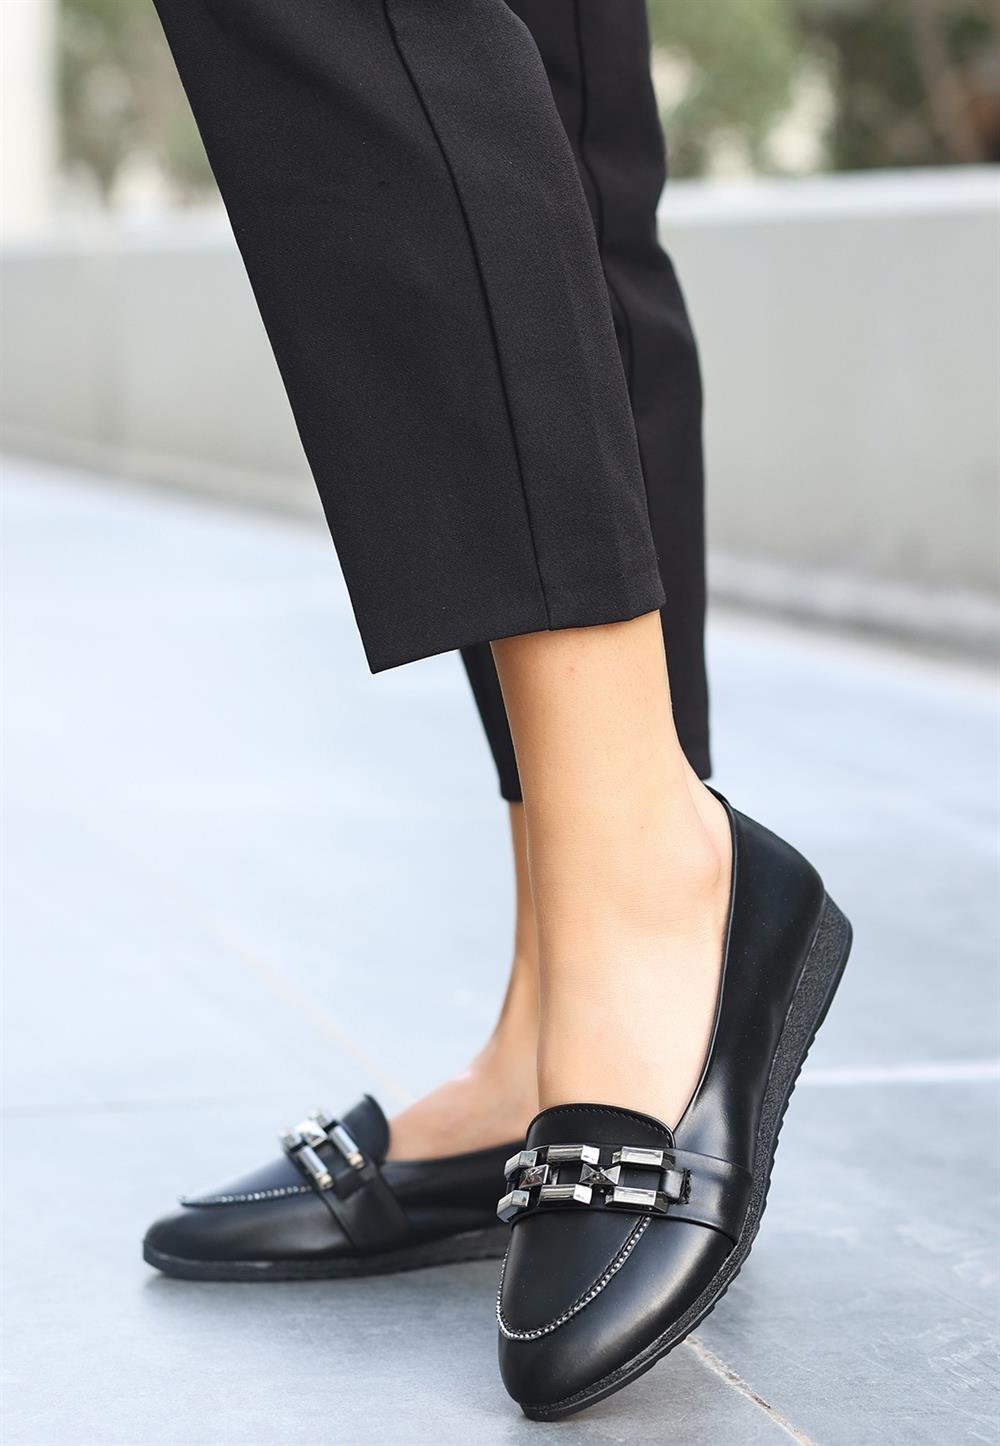 Dois Siyah Cilt Babet Ayakkabı | Babet Modelleri ve Fiyatları |  KaliteMall.com